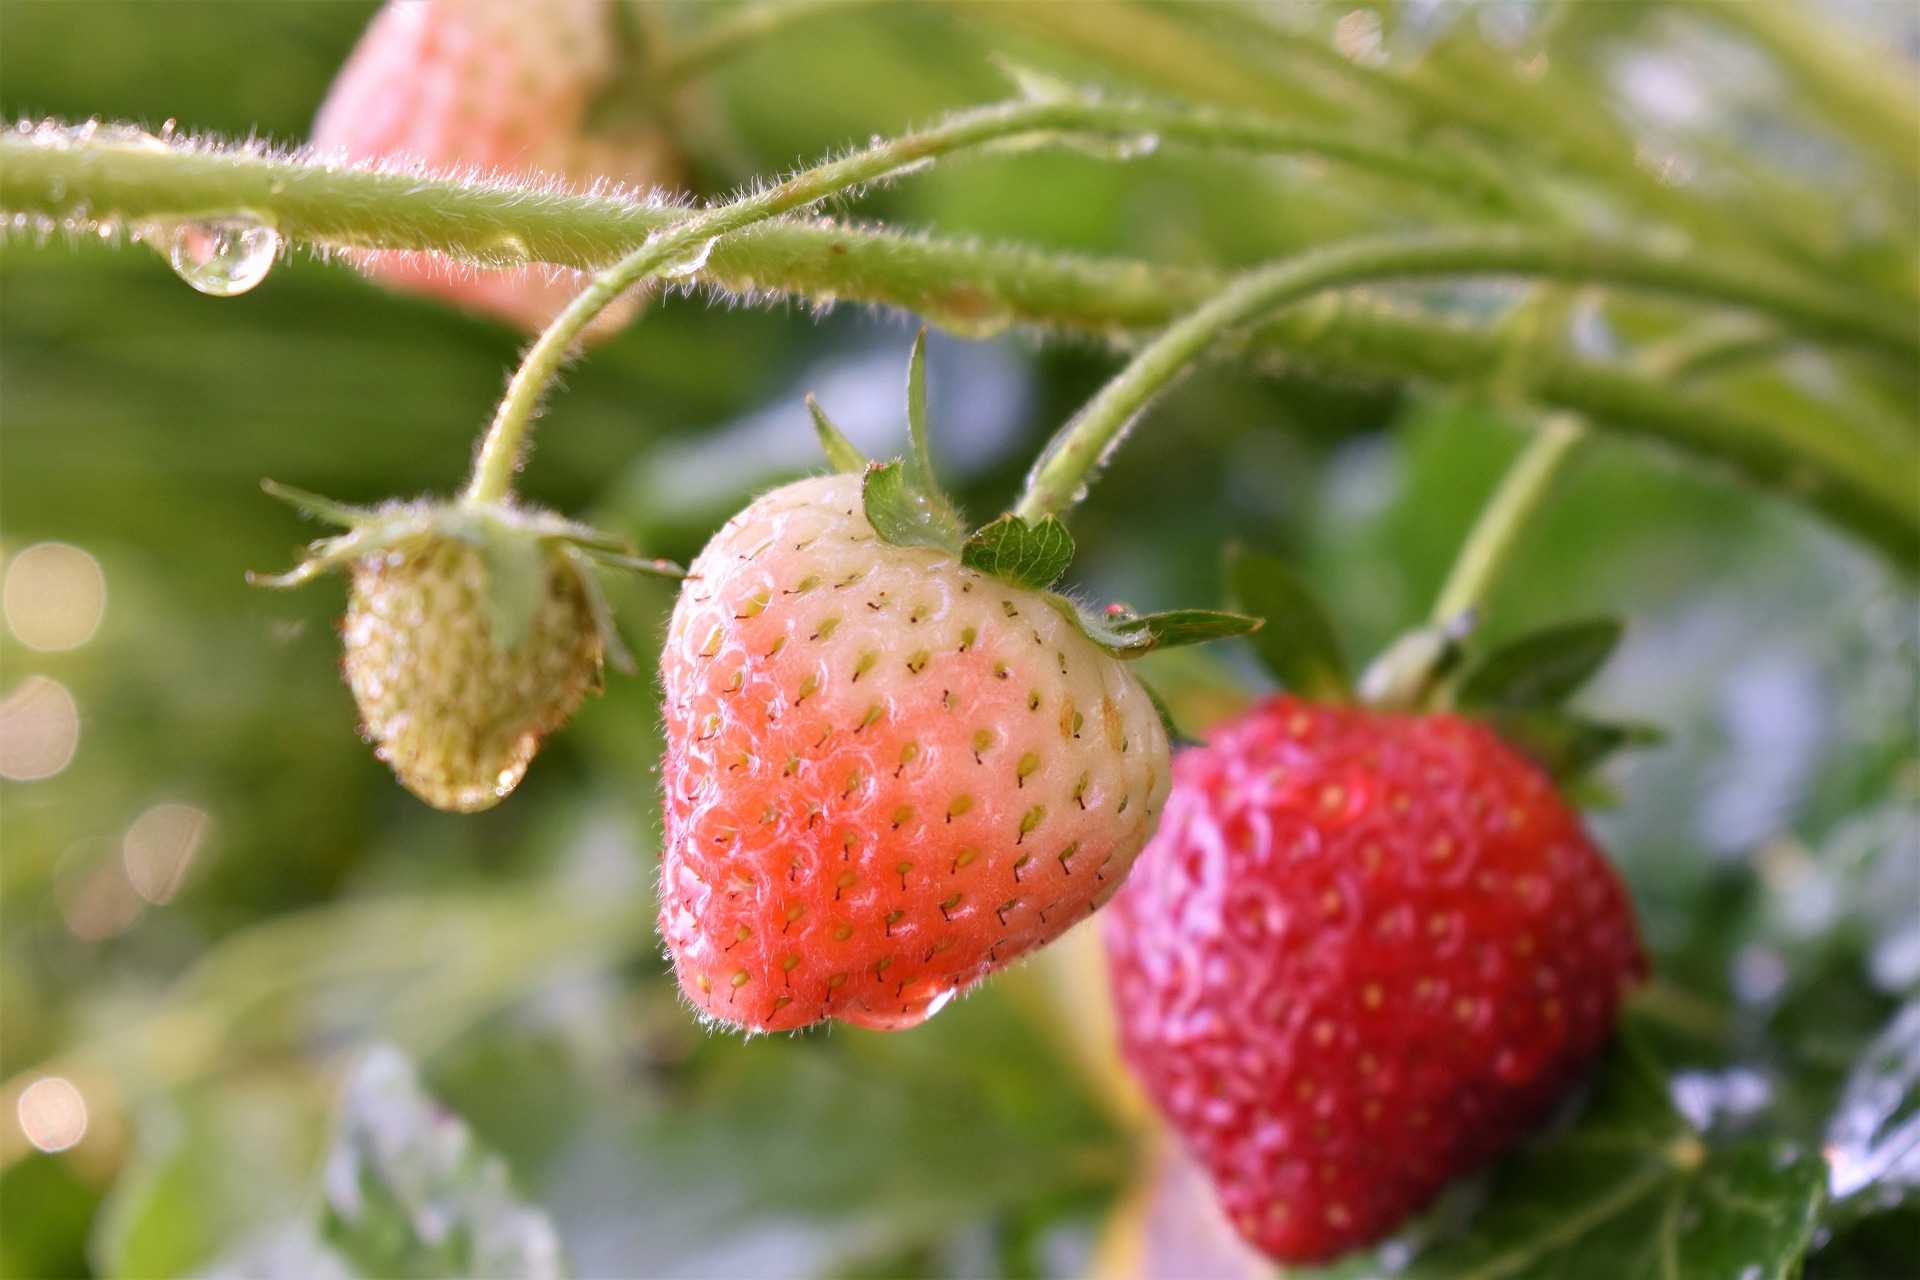 British home grown strawberries